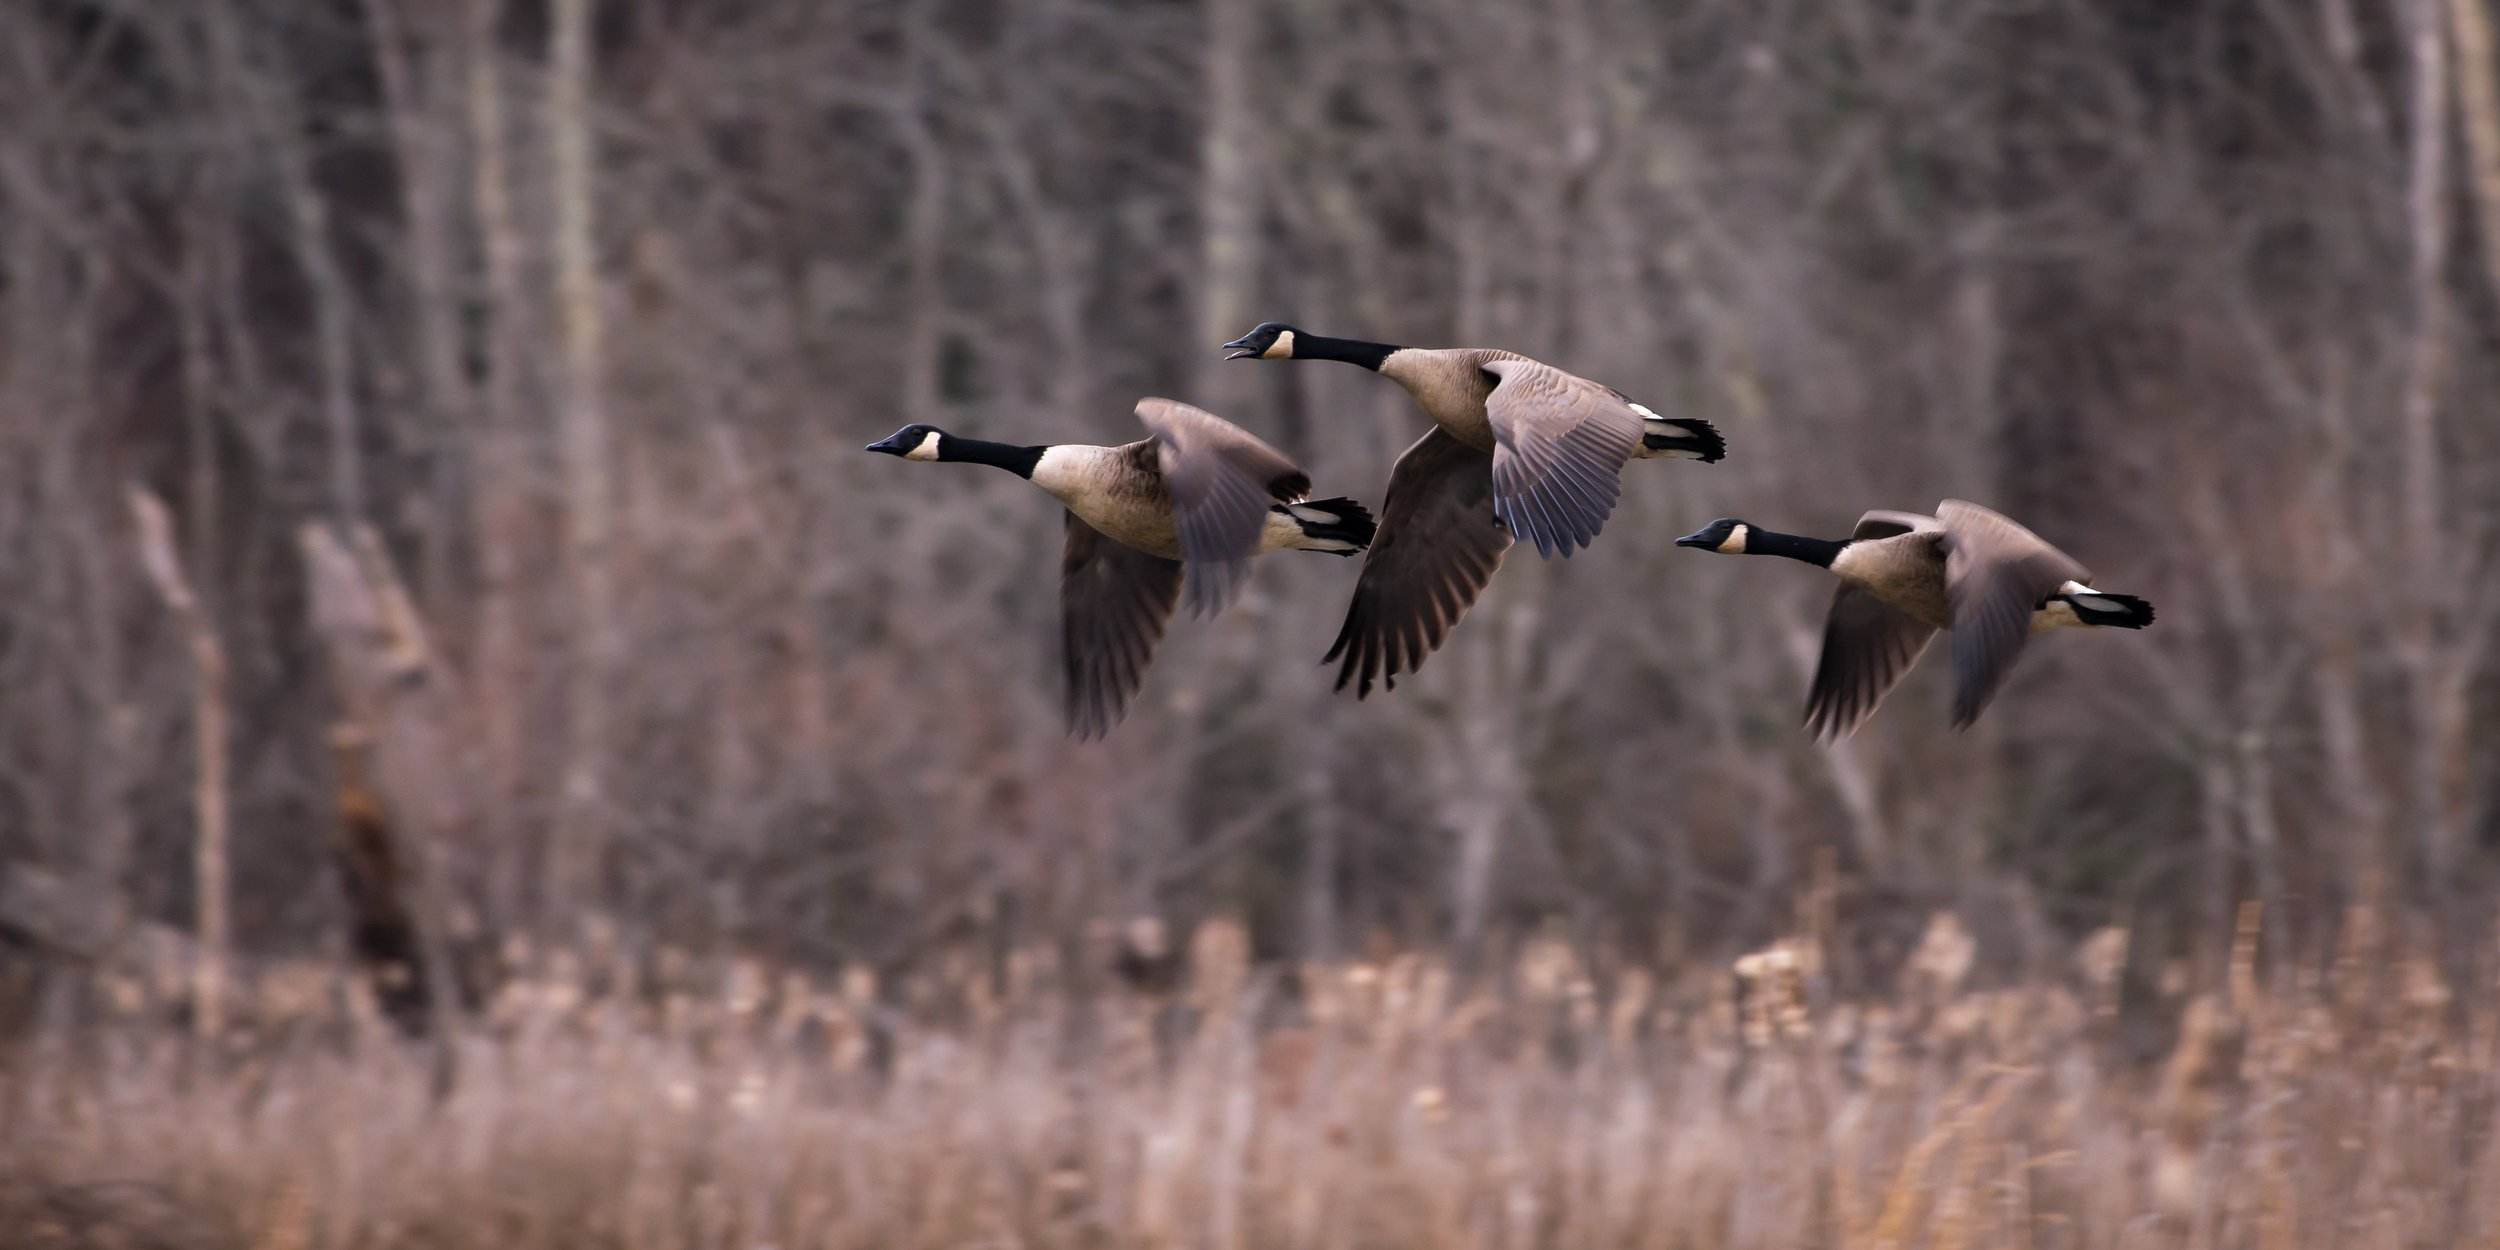 three geese in flight.JPG